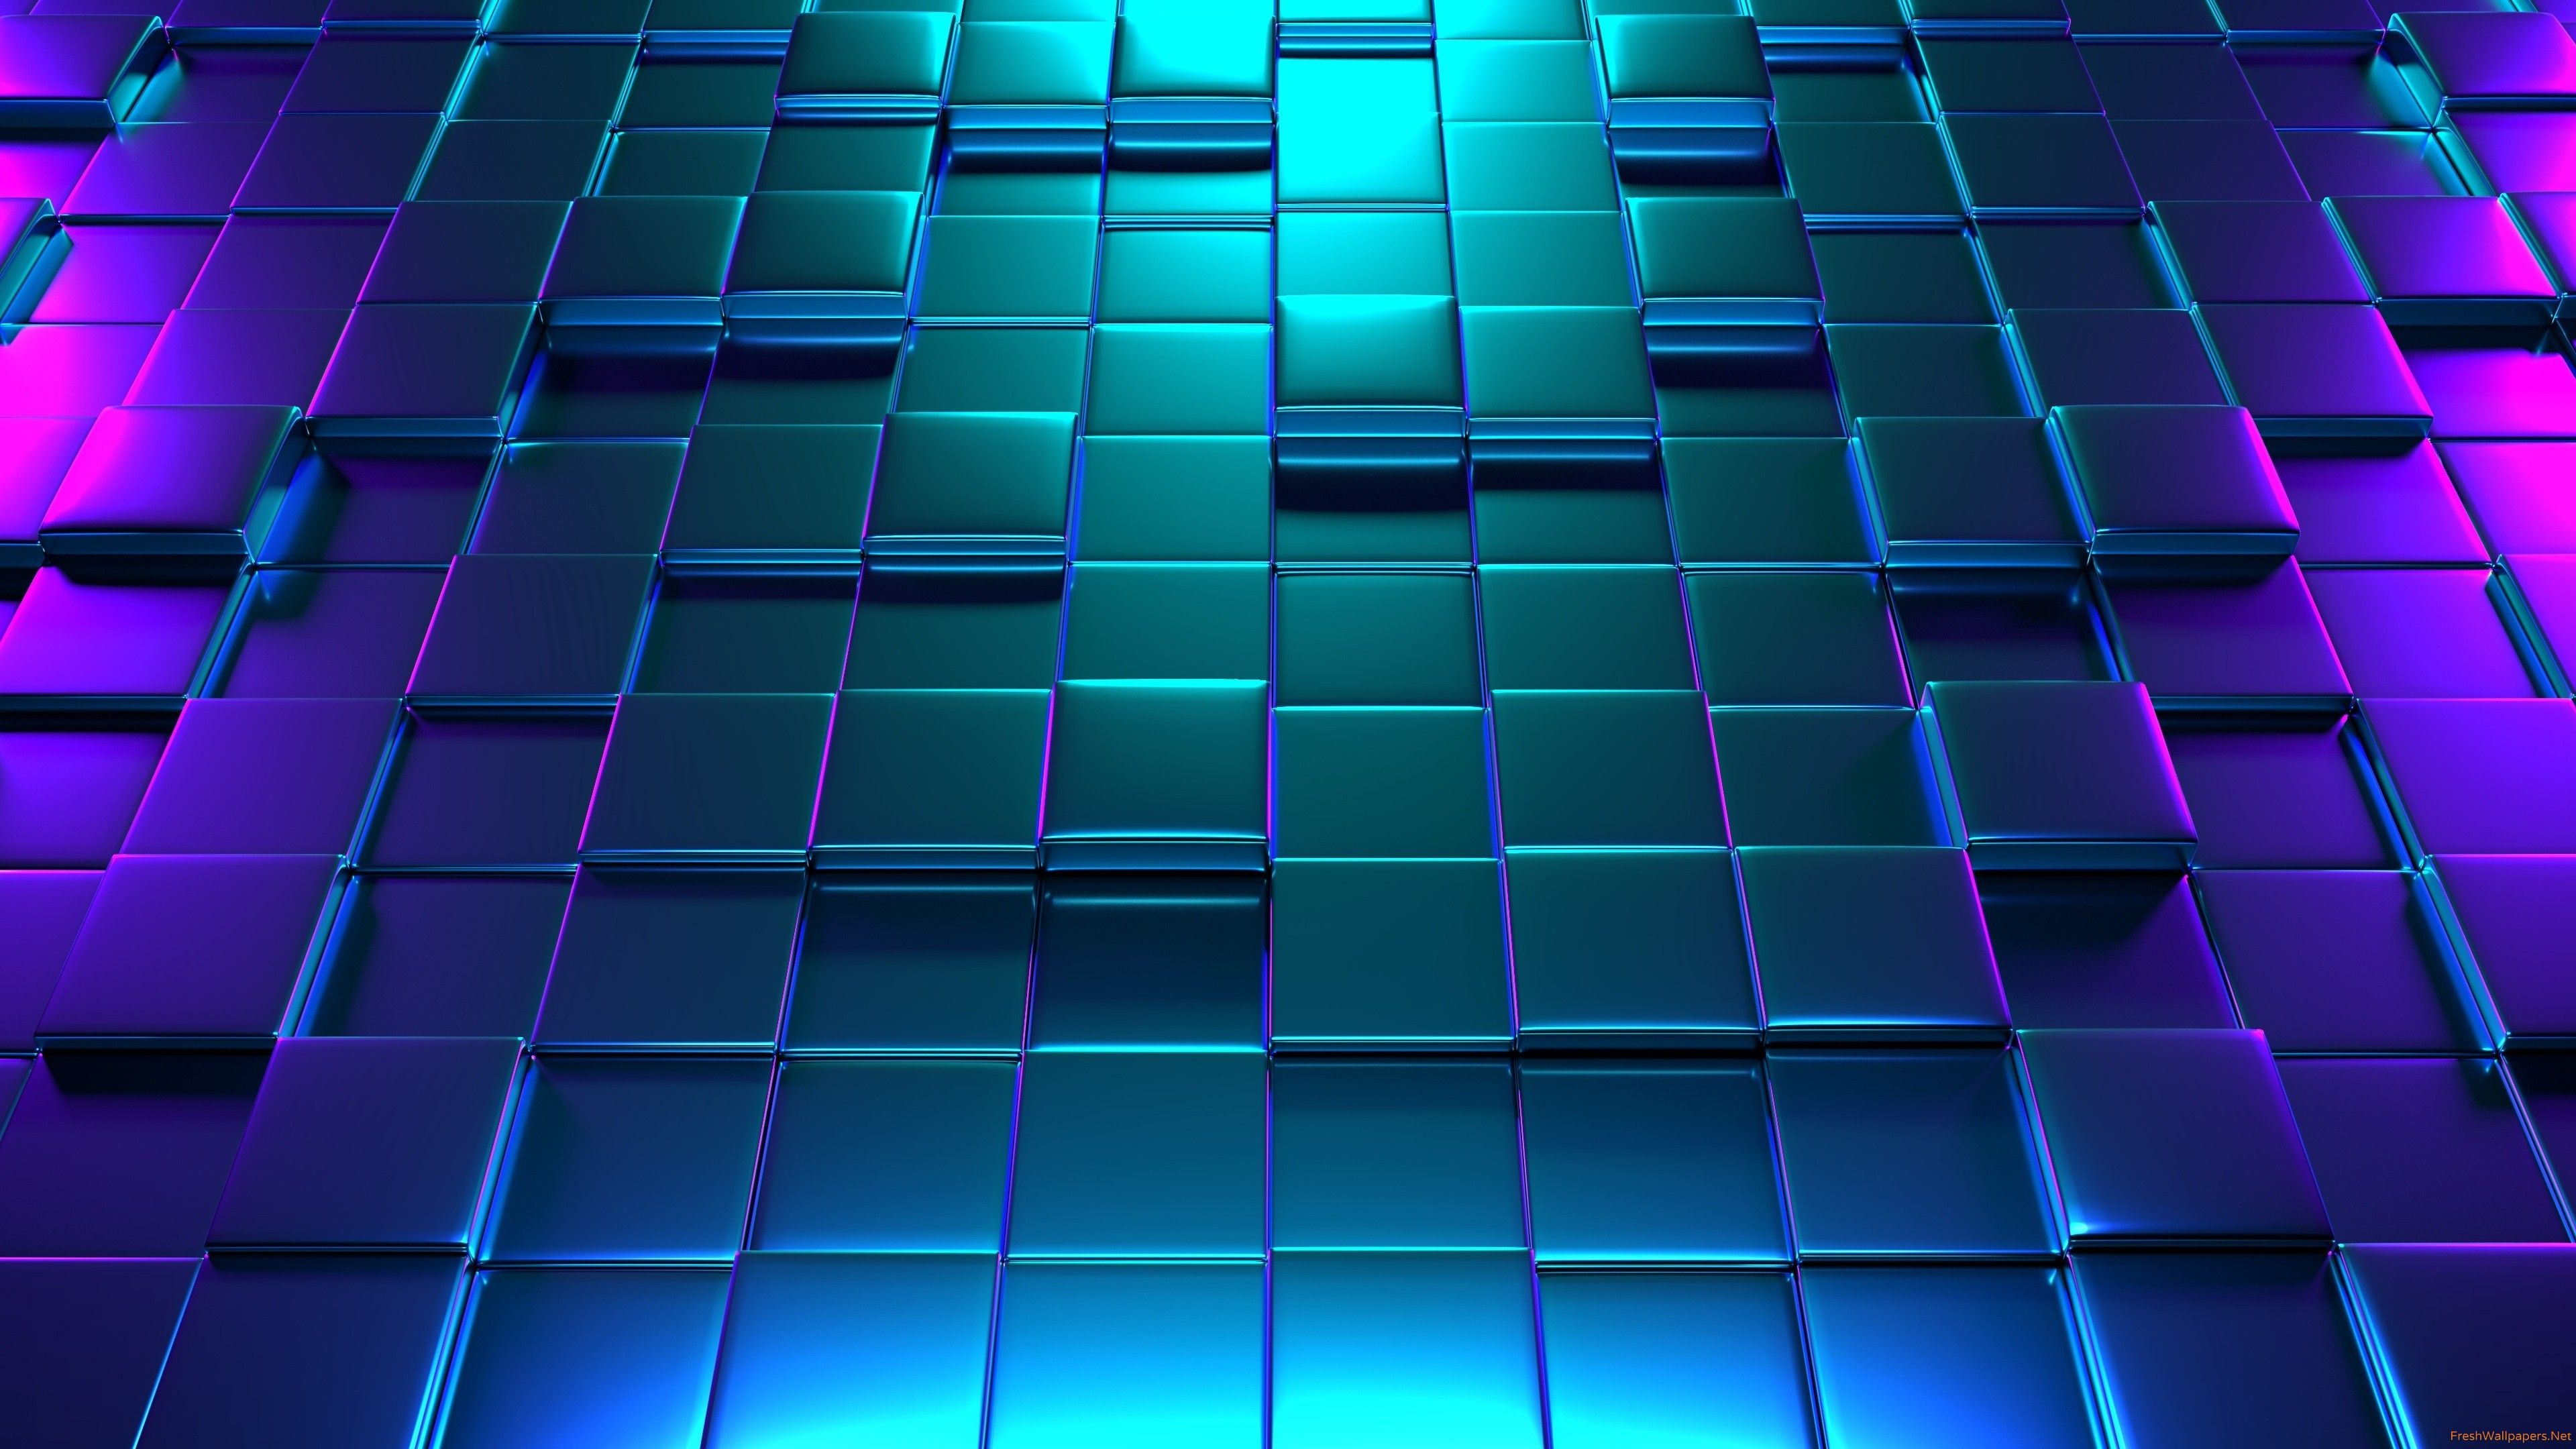 Hình nền Neon 3D 4k - Wallpaper Cave: Đã đến lúc để bạn thay đổi hình nền cũ kỹ trên màn hình điện thoại của mình với những hình ảnh Neon 3D đầy màu sắc và bắt mắt. Với Wallpaper Cave, bạn sẽ có ngay bộ sưu tập hình nền Neon 3D 4k độ phân giải cao nhất, mang đến cho bạn trải nghiệm hình ảnh hoàn hảo và mượt mà.